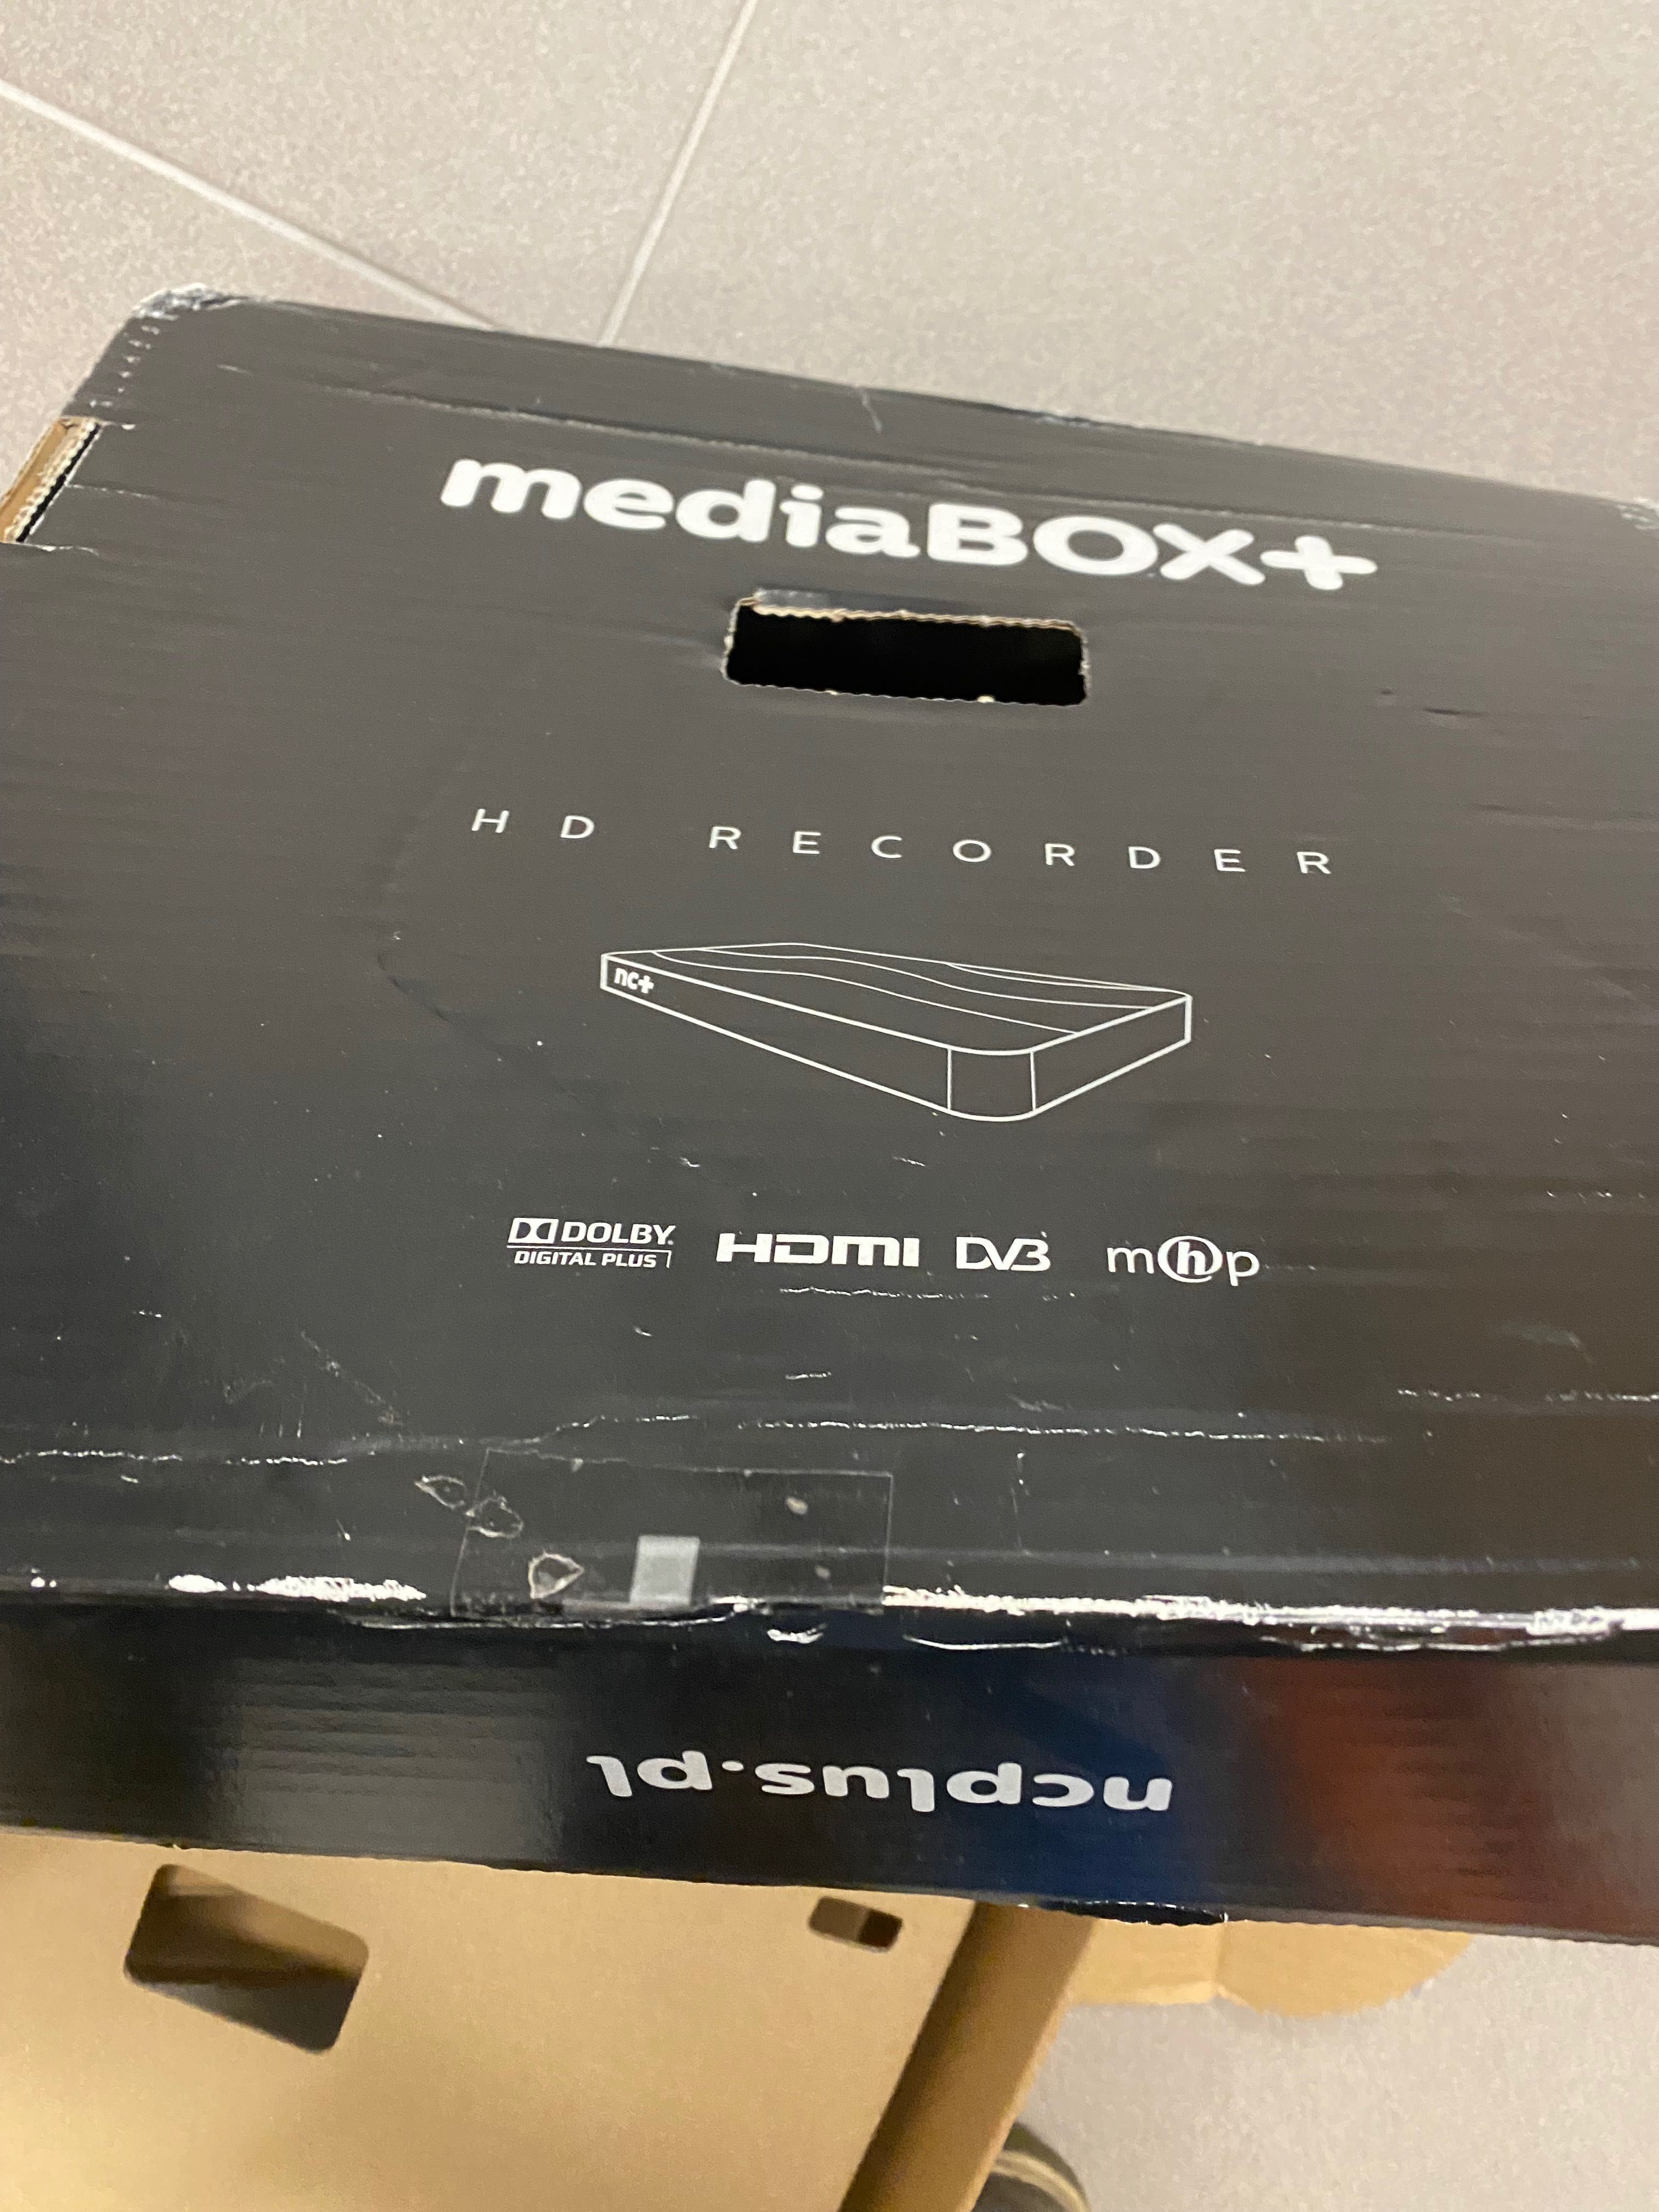 Dekoder media box